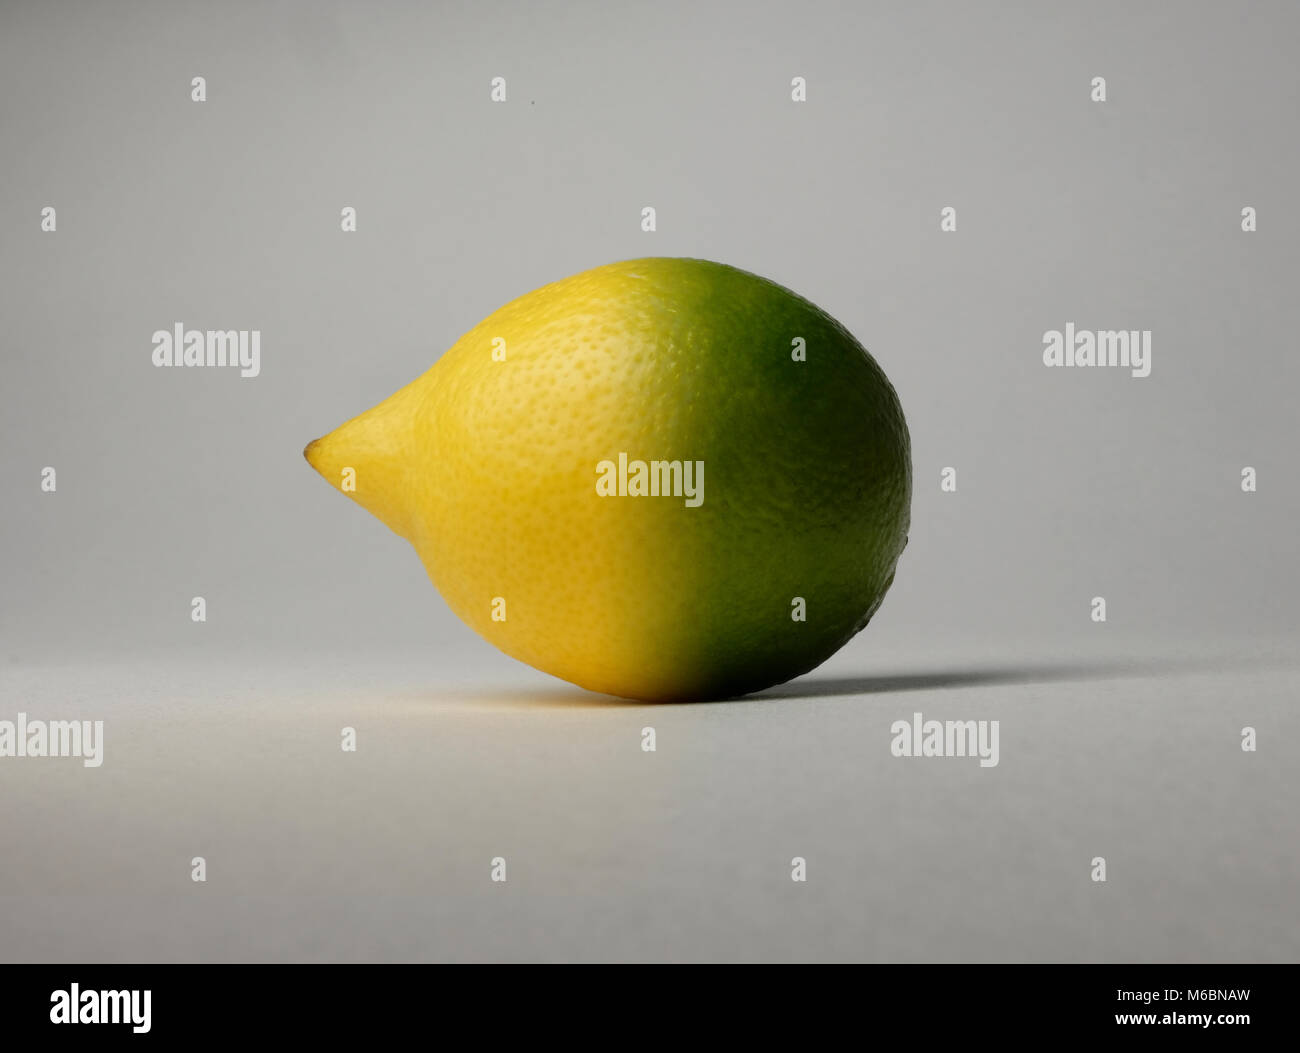 Zitrone und Limette hybrid Foto, zwei Citrus würzige Früchte fusionierten verheiratet kombiniert in einem superfruit Stockfoto